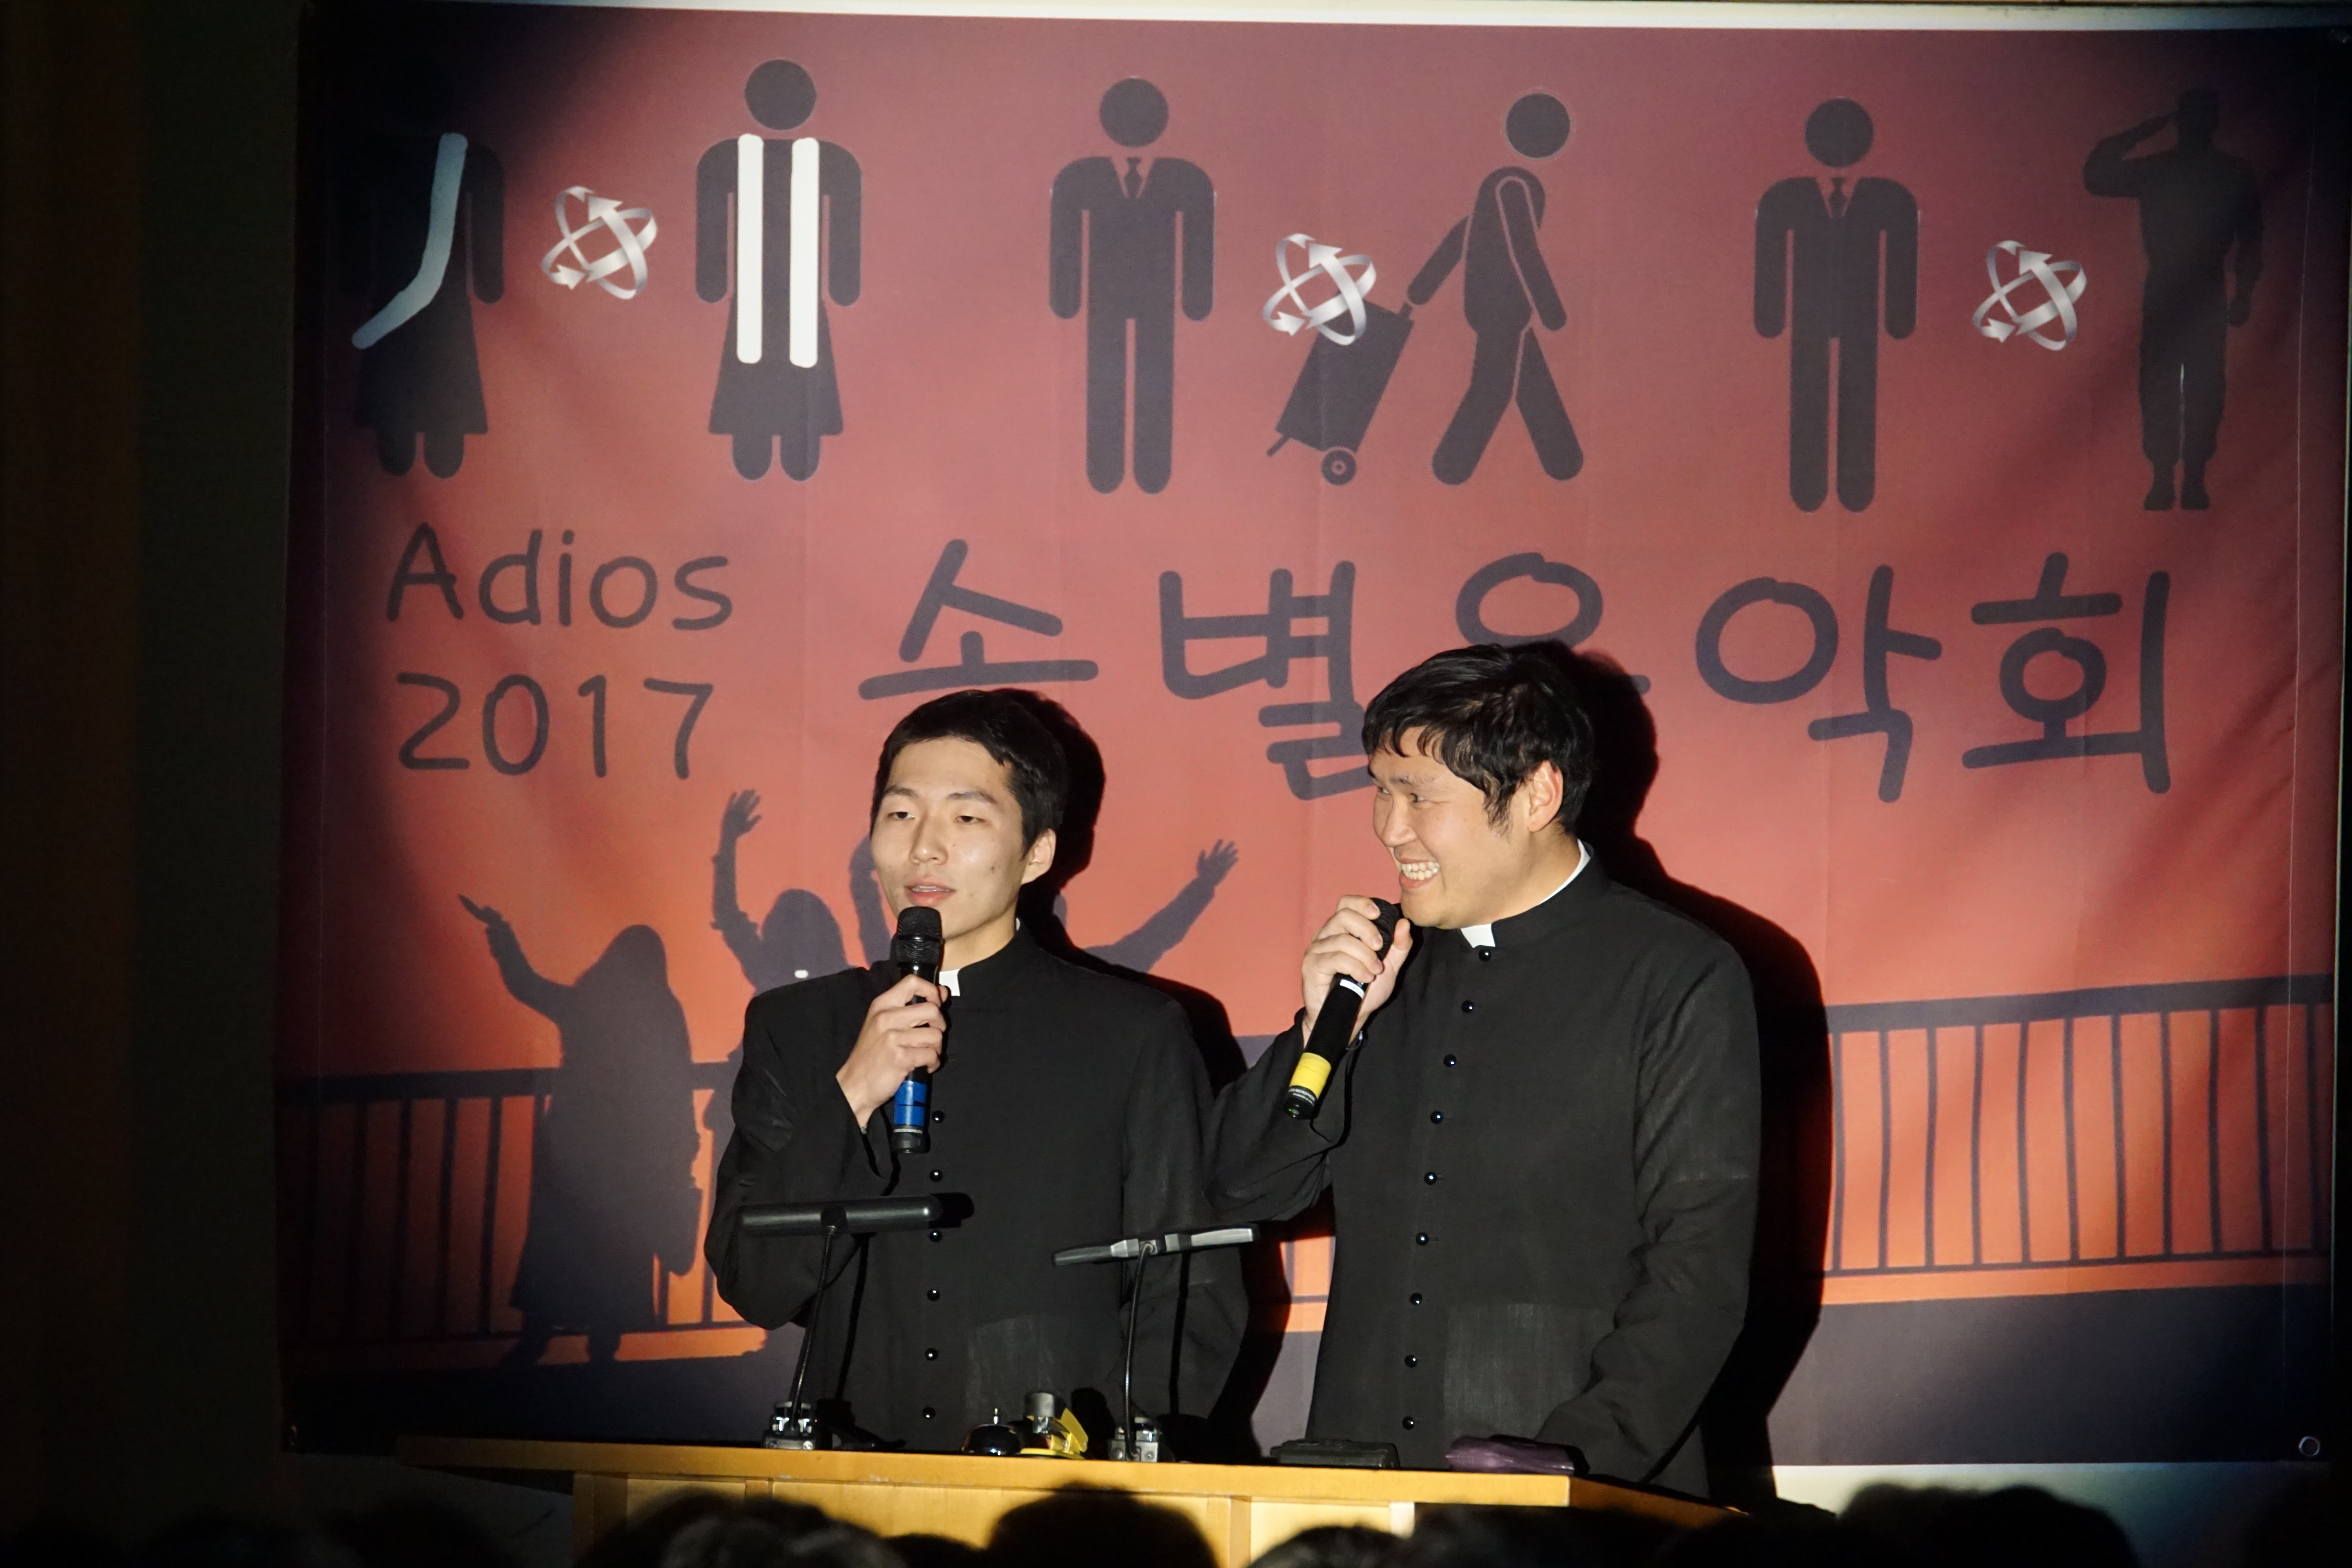 송별음악회(2017.11.24)의 관련된 이미지 입니다.